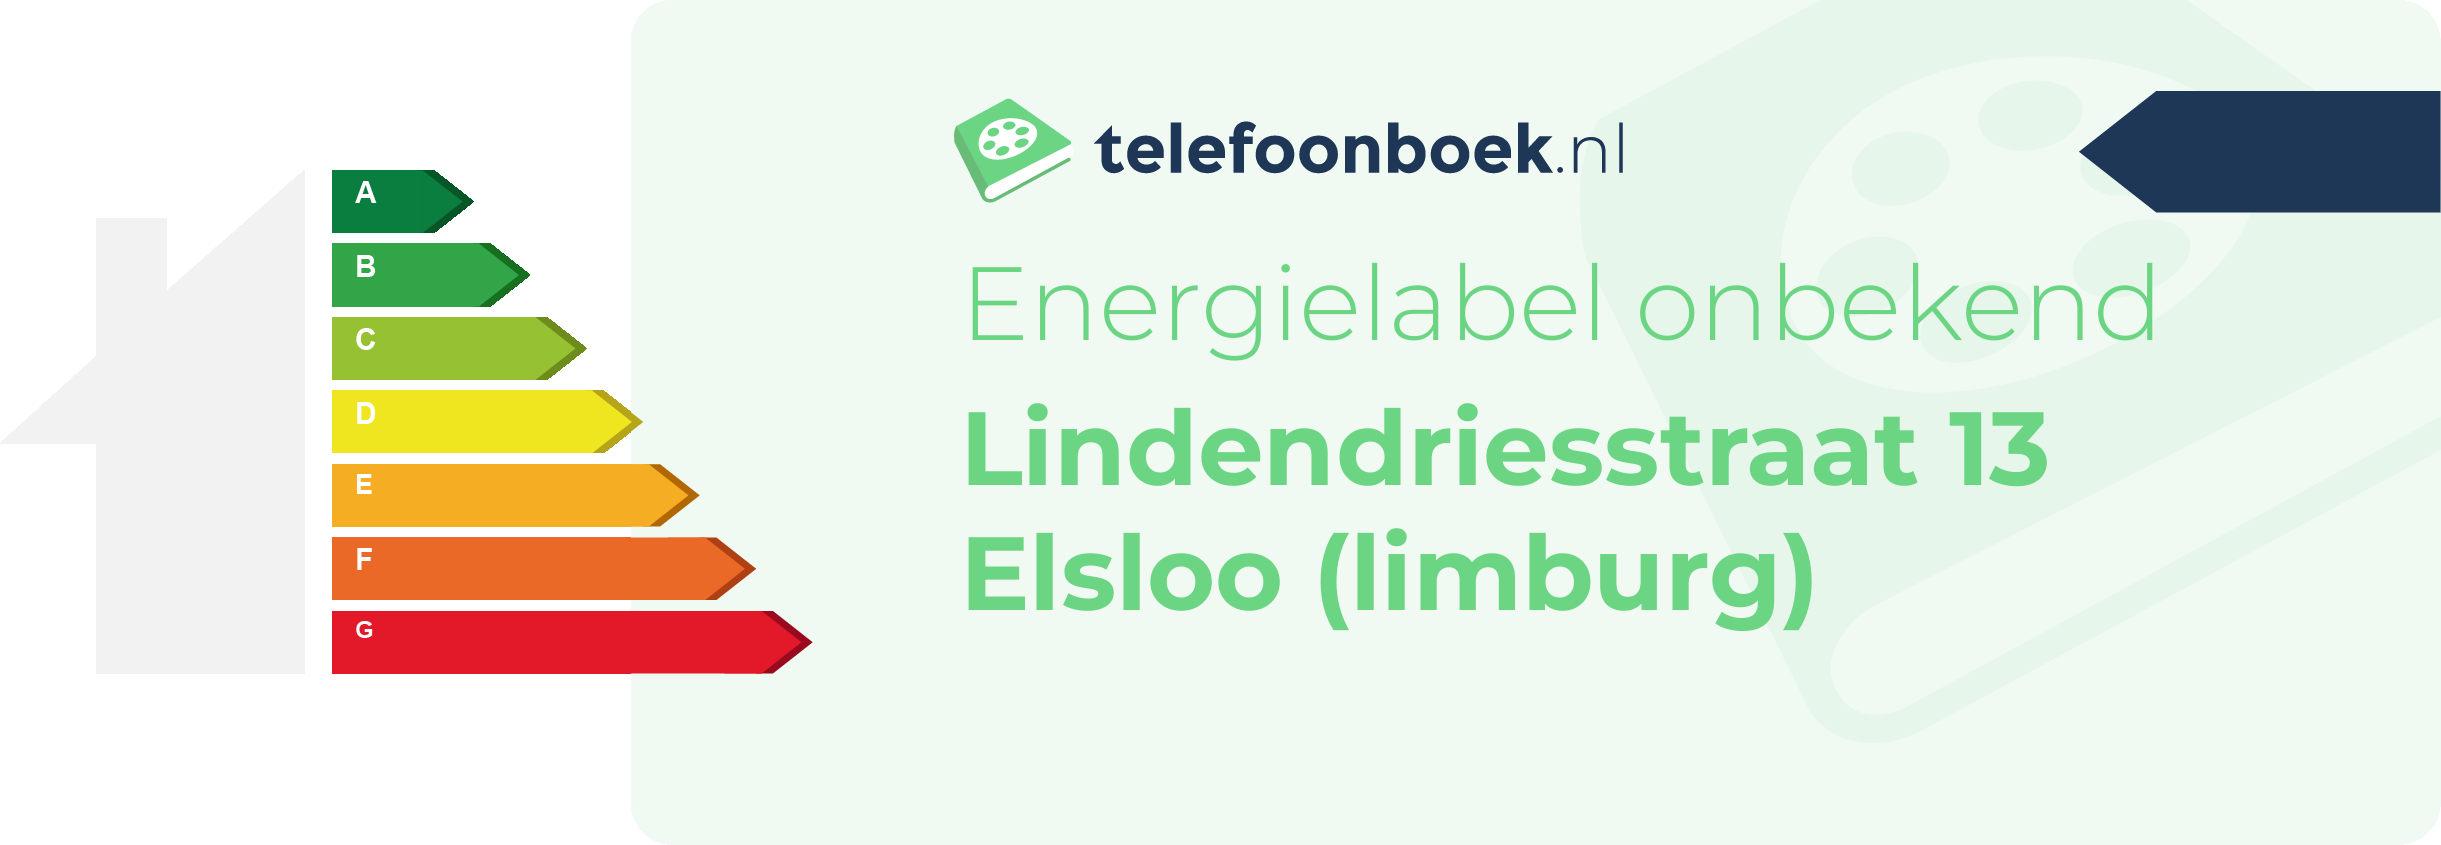 Energielabel Lindendriesstraat 13 Elsloo (Limburg)